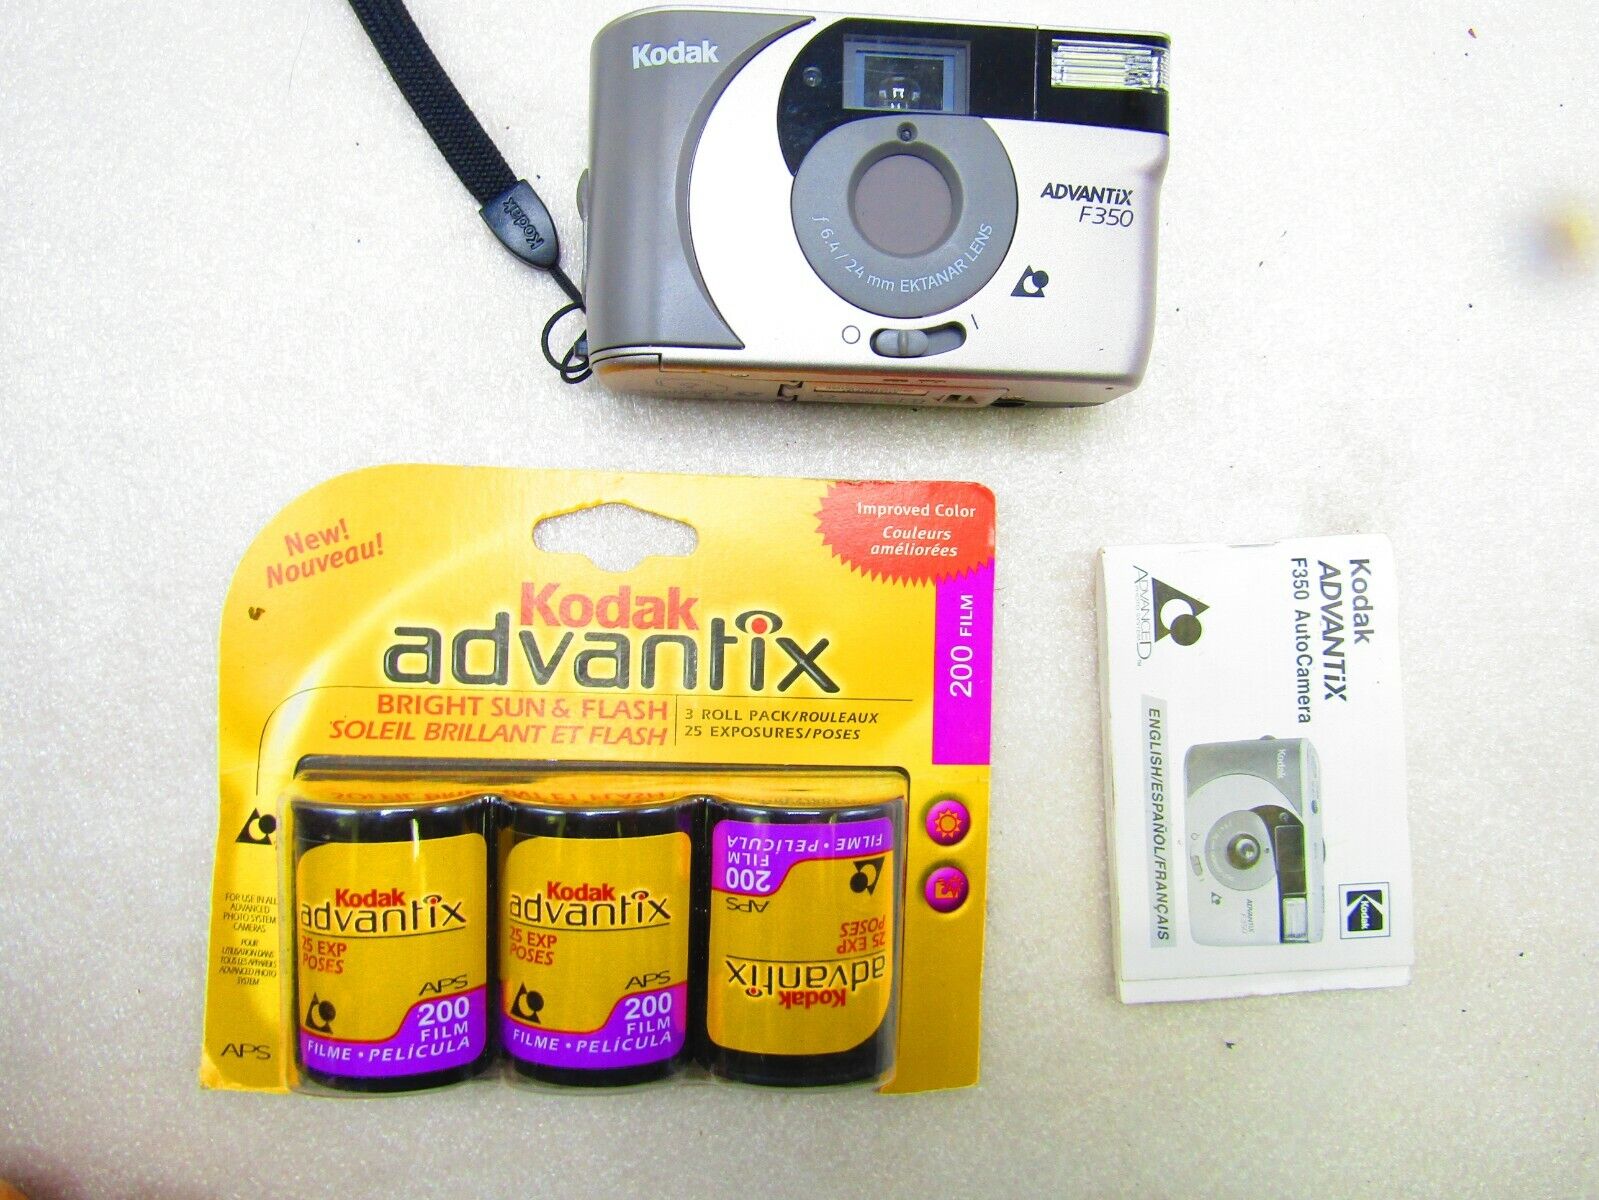 Camera assortment, three units Kodak Advantage F 350 - фотография #5